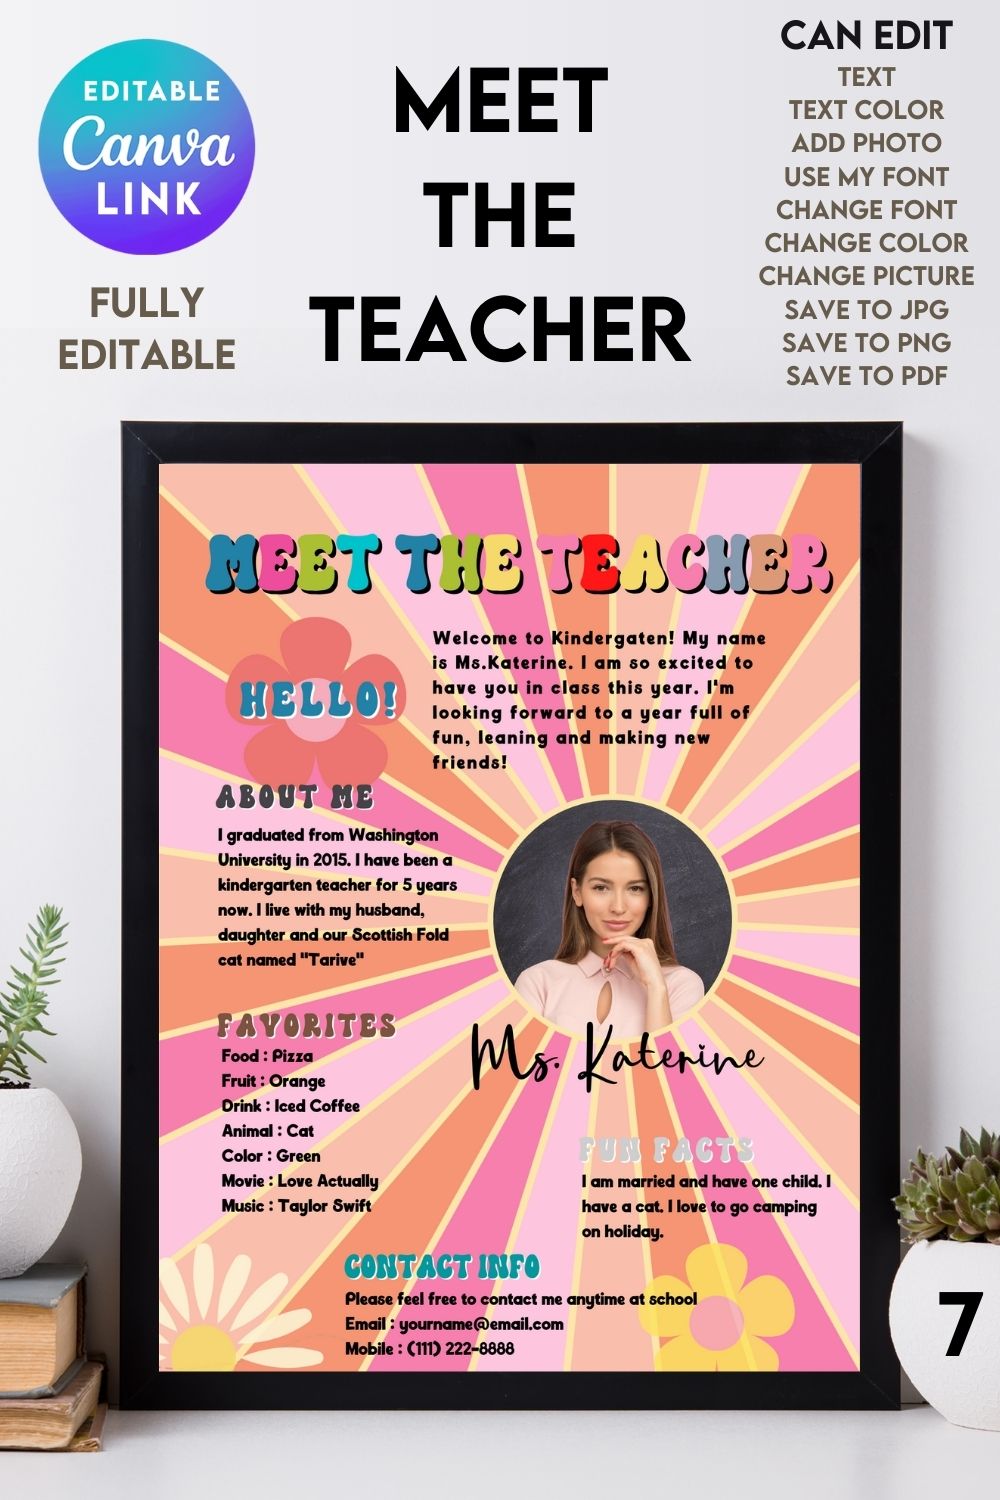 Meet The Teacher #7 – Canva Template pinterest preview image.